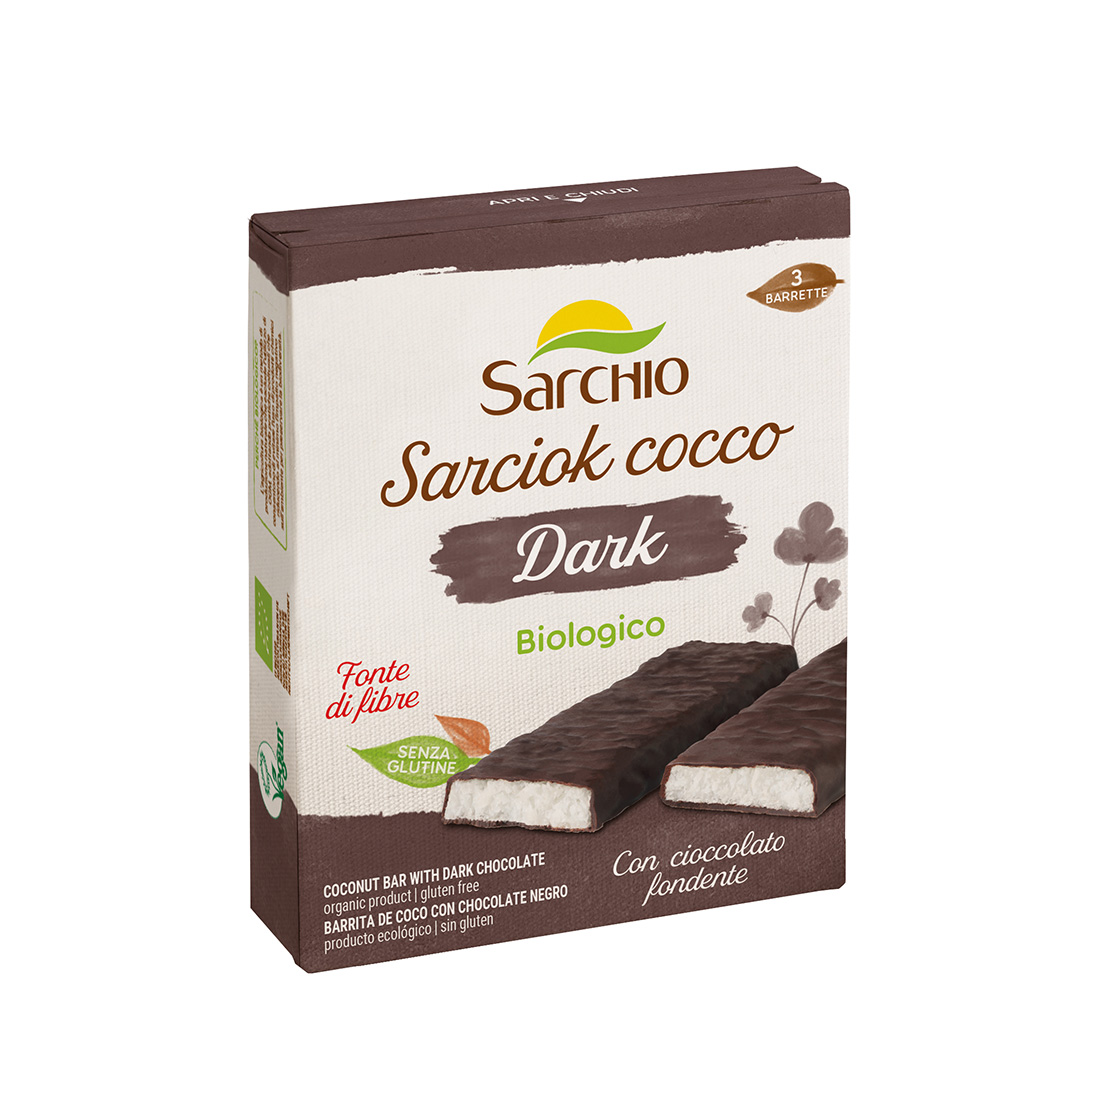 Barrette Sarciok cocco Dark